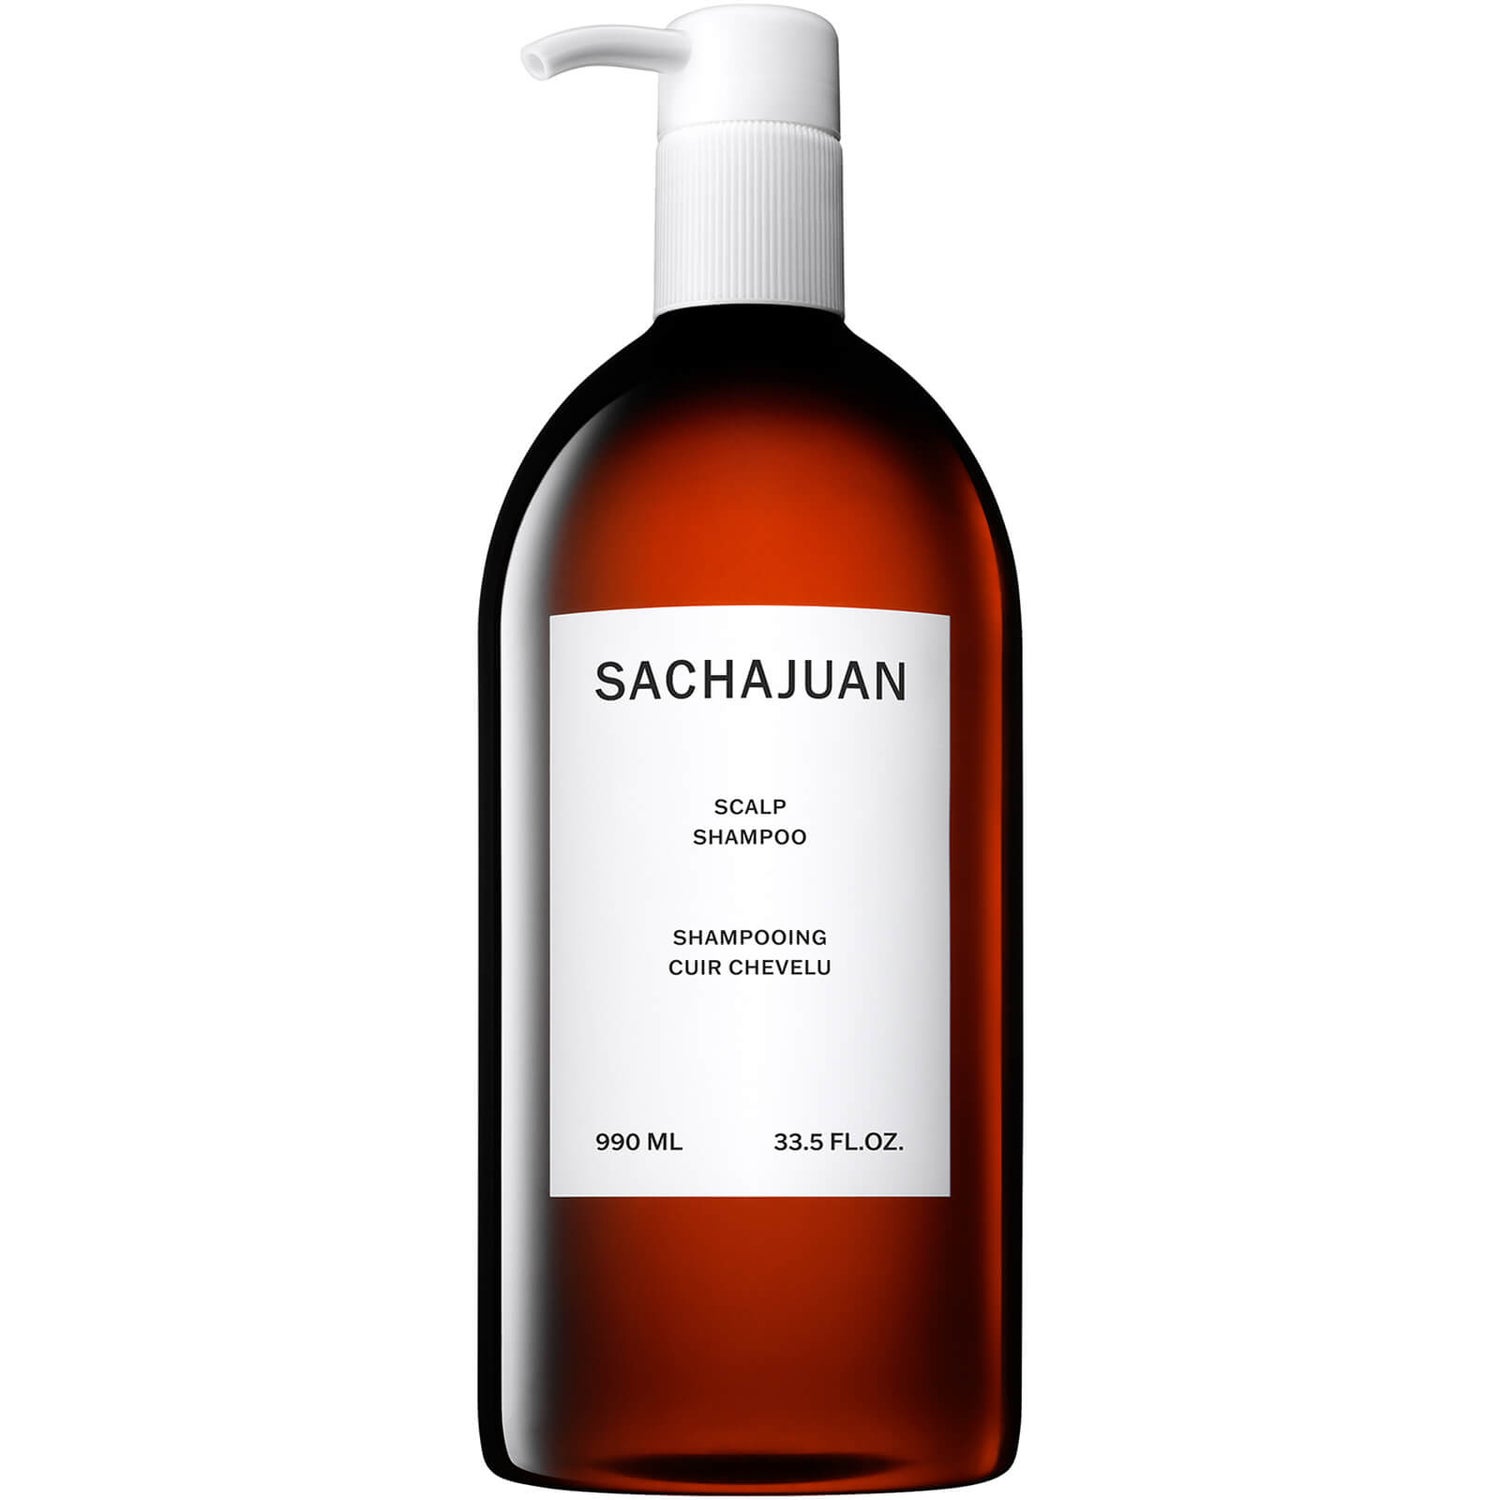 Sachajuan Scalp Shampoo 990ml